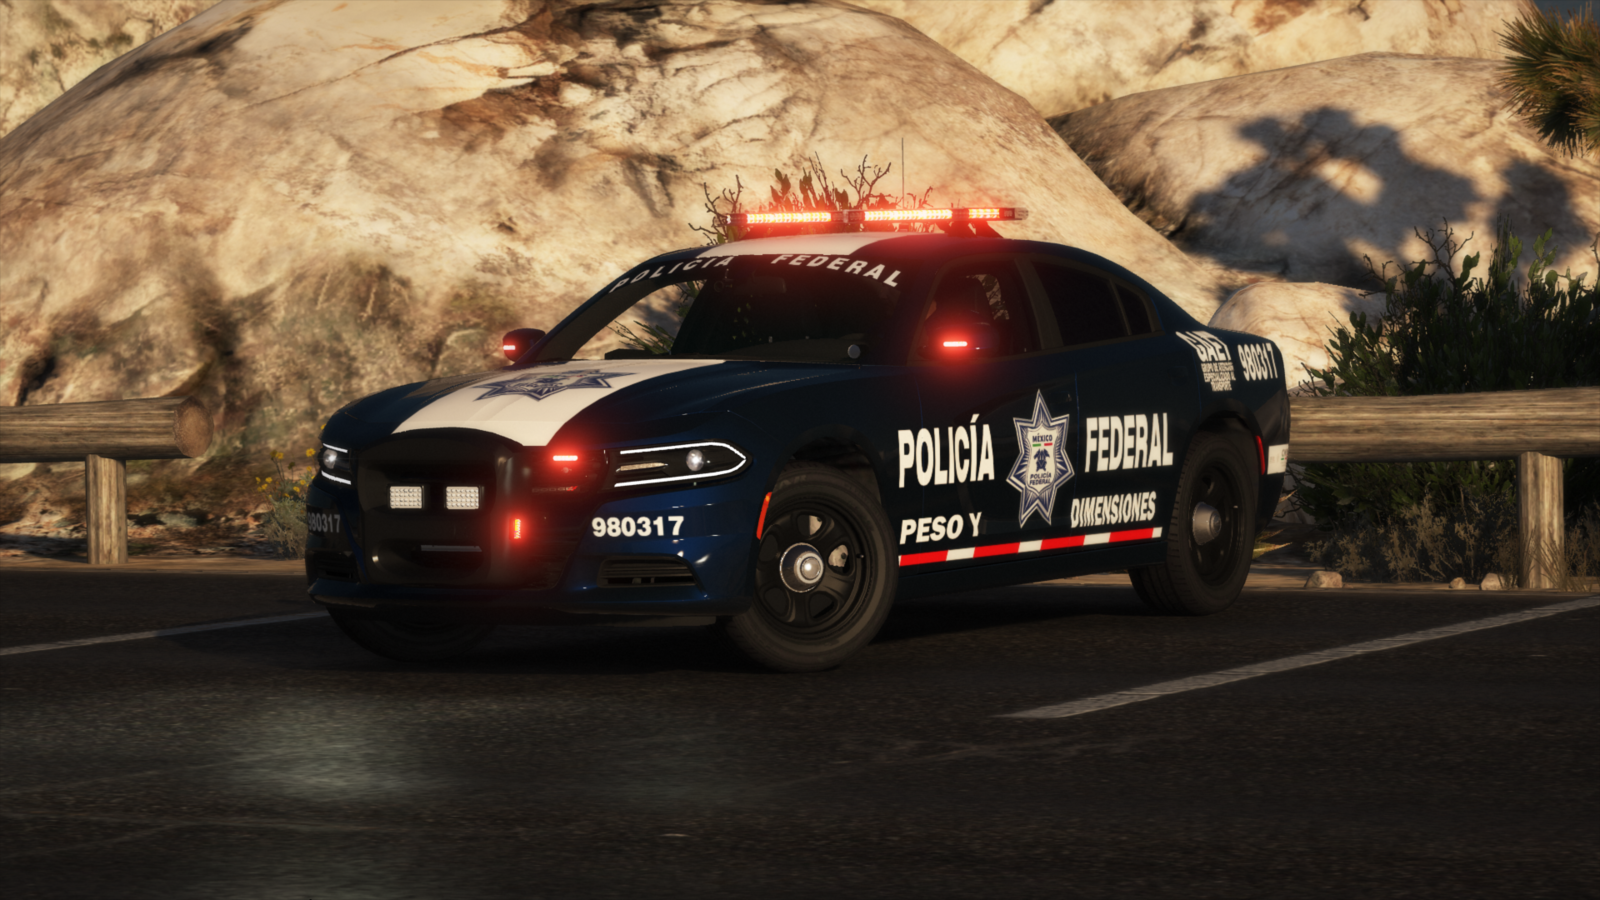 2018 Dodge Charger Policía Federal de México [Mexican Federal Police] -  